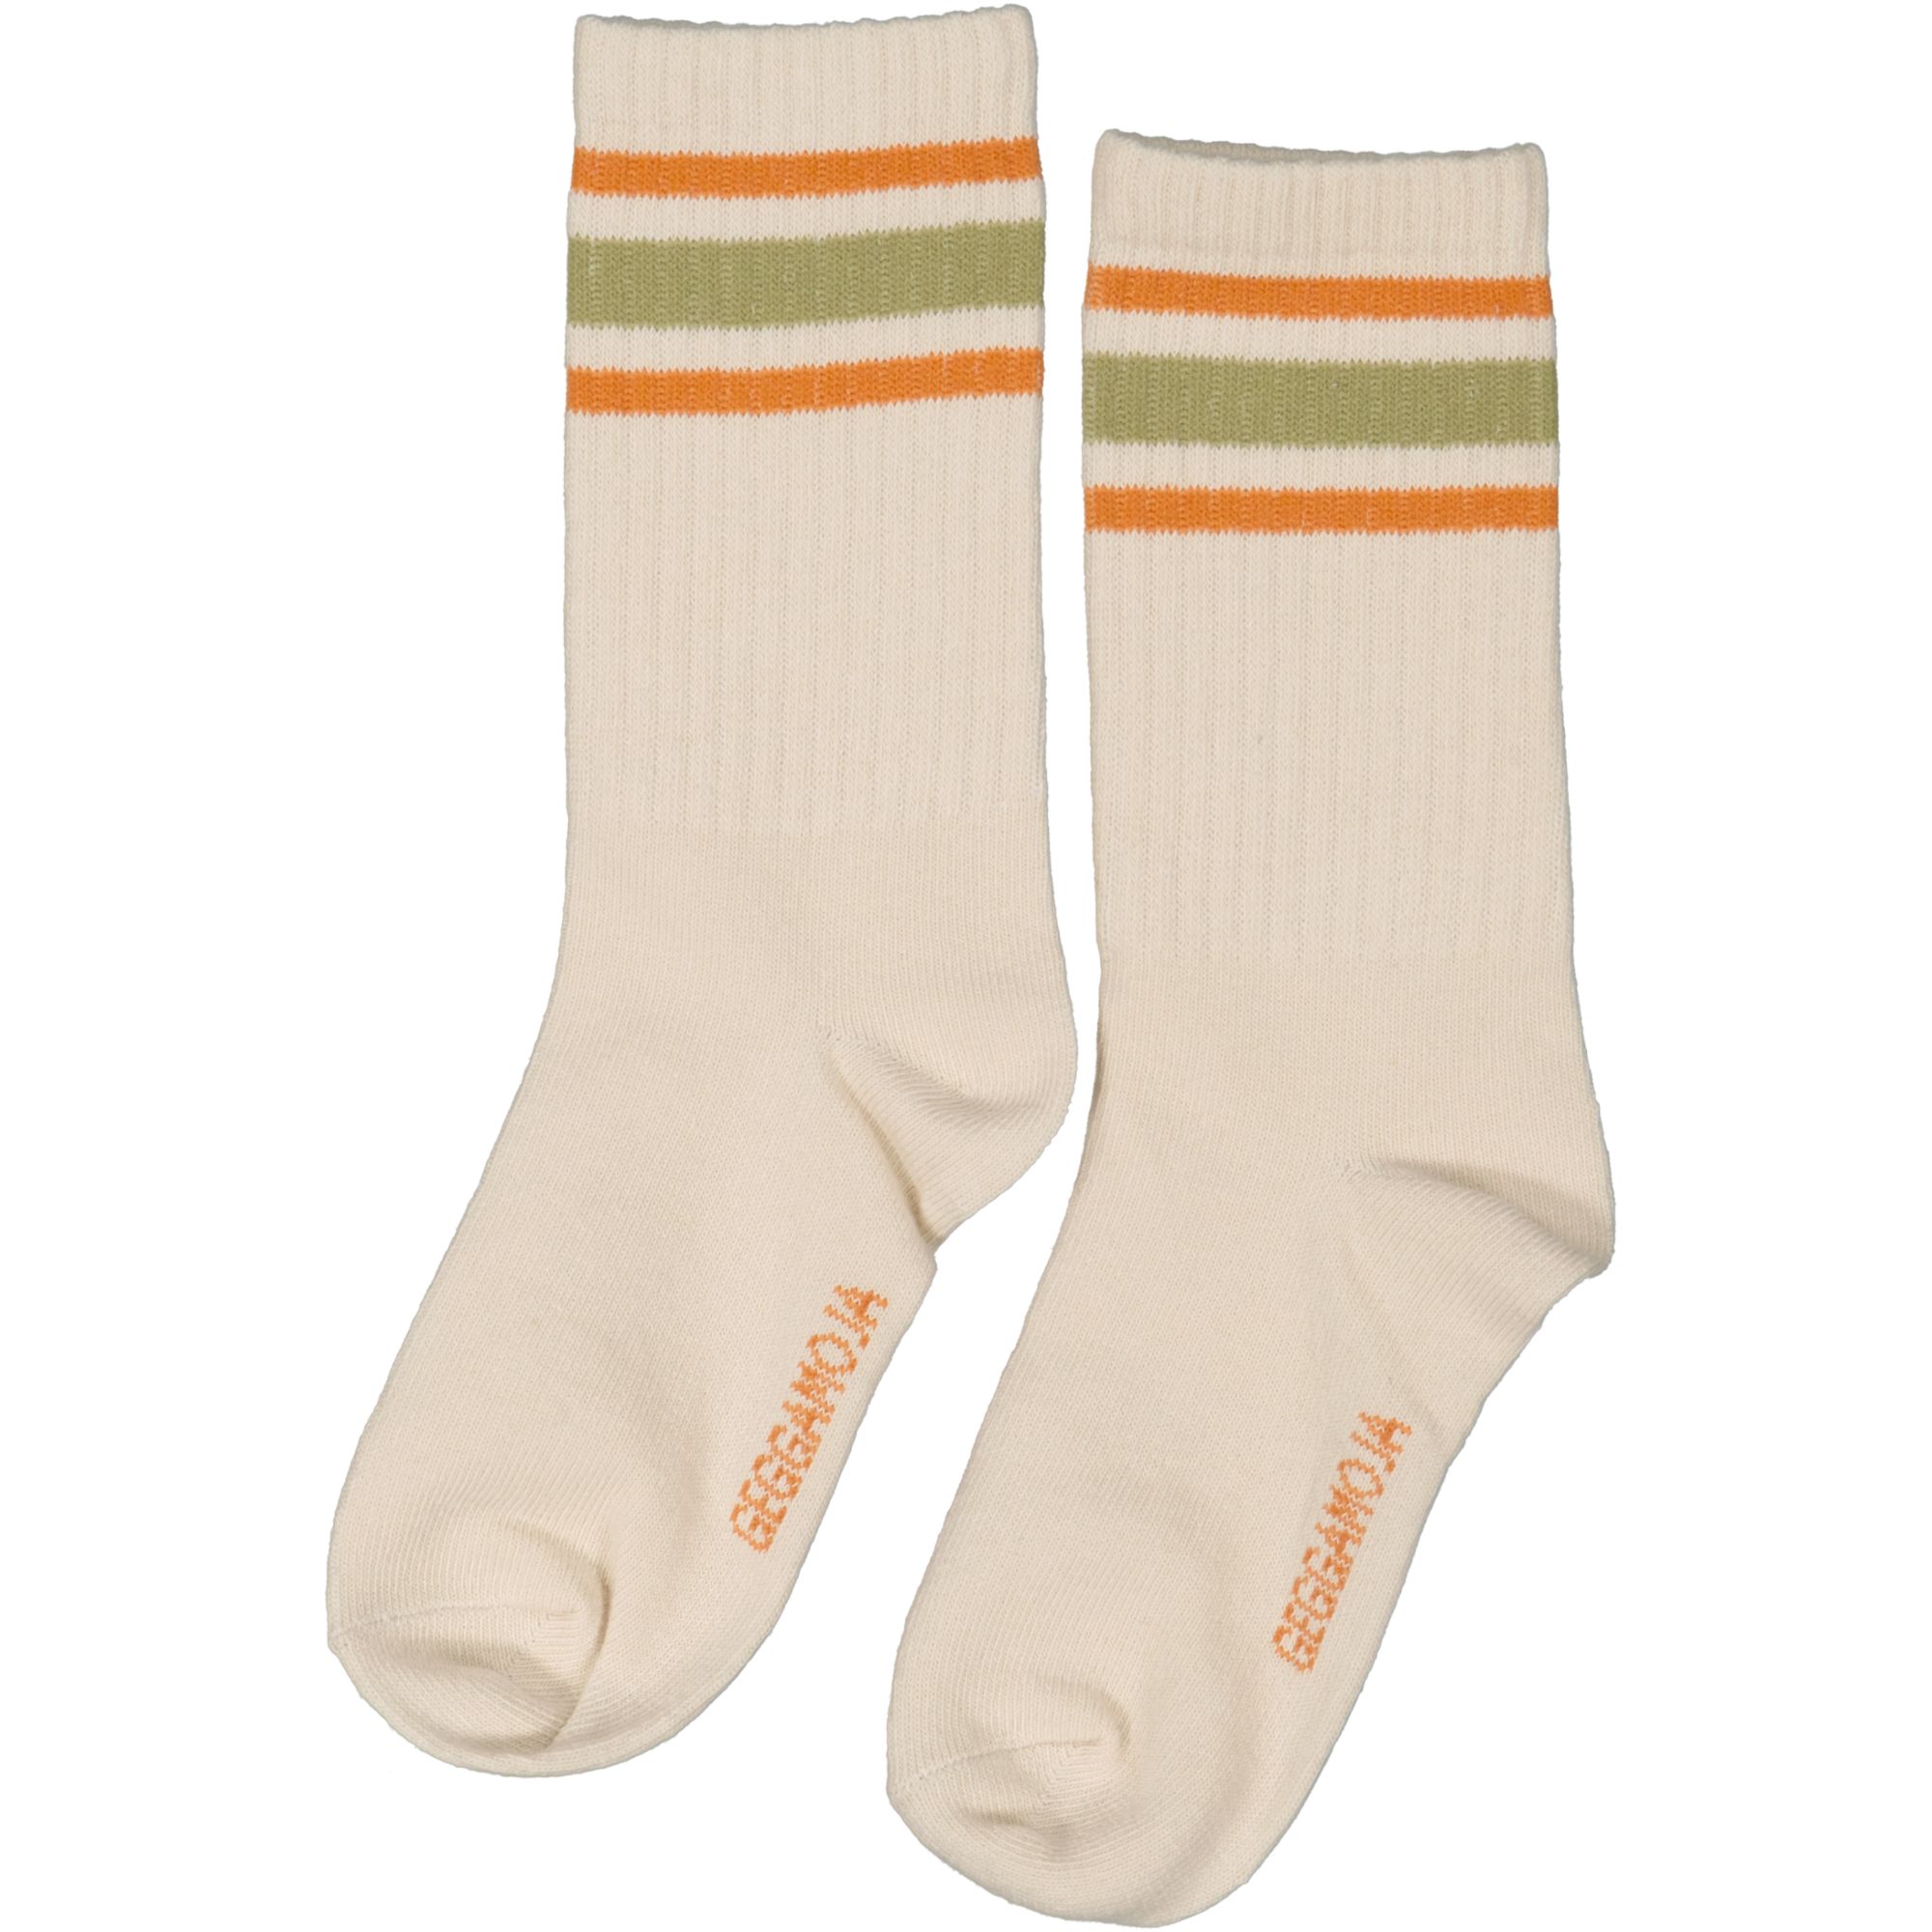 Tennis socks 2-pack Beige